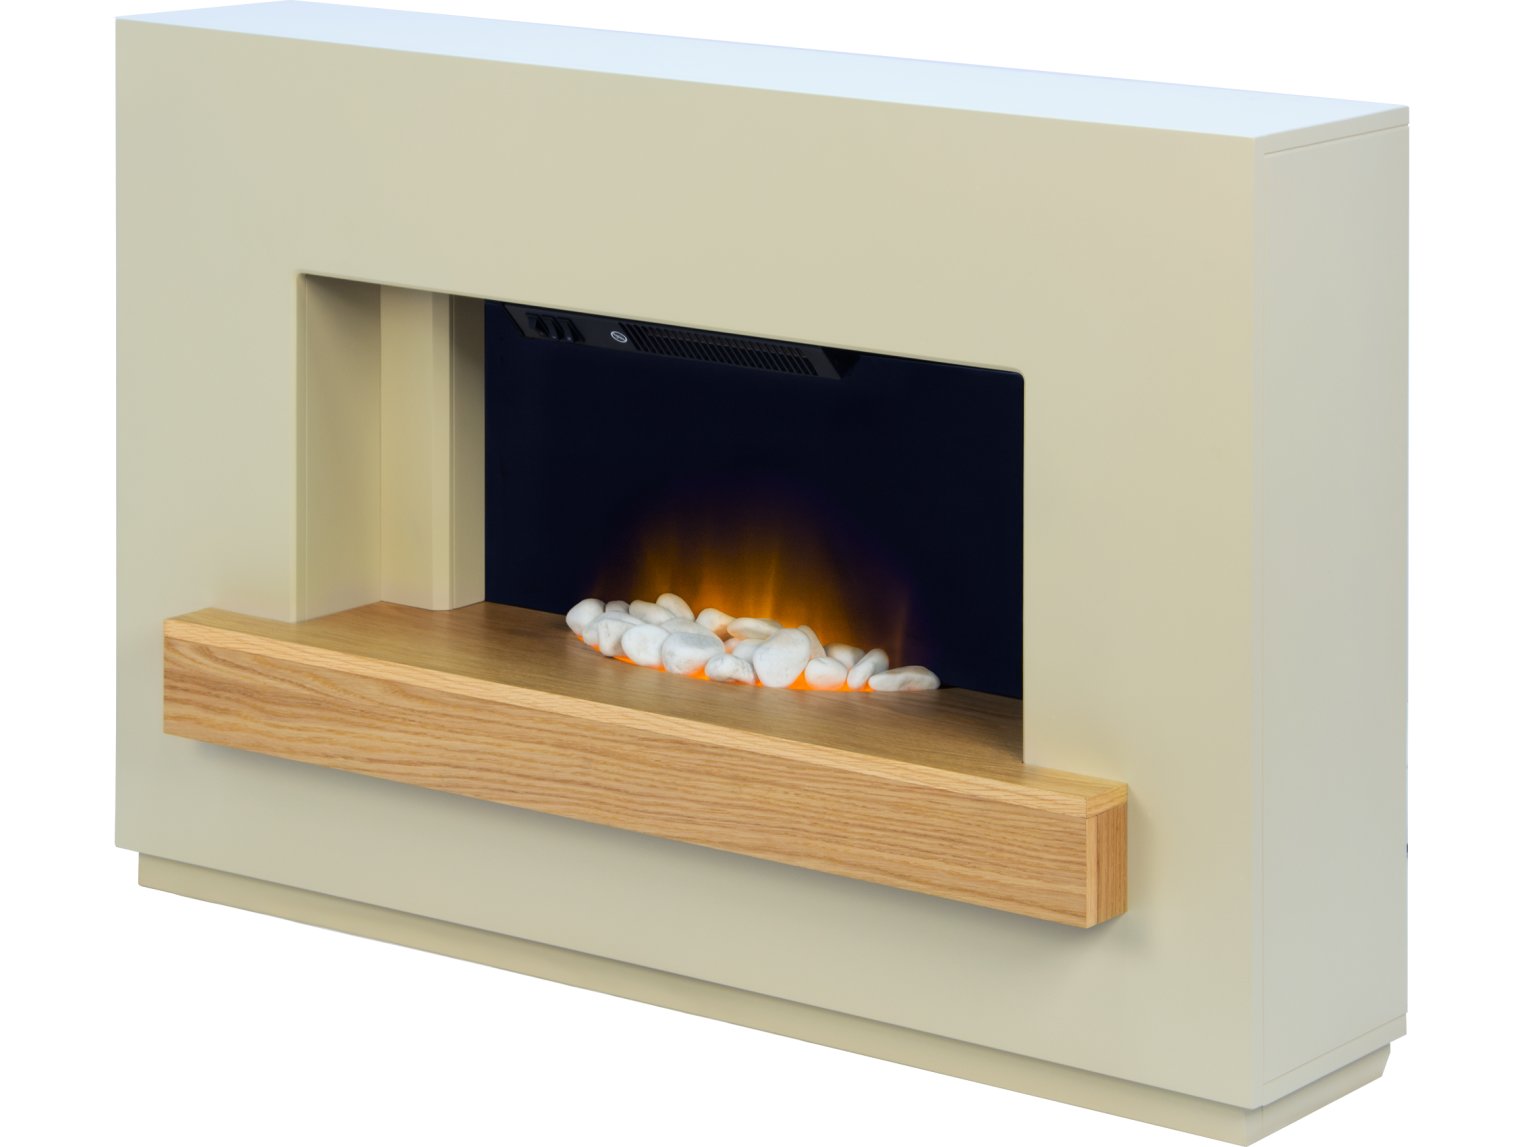 Adam Sambro Stone Effect Oak Shelf, 46" Fireplace Suite